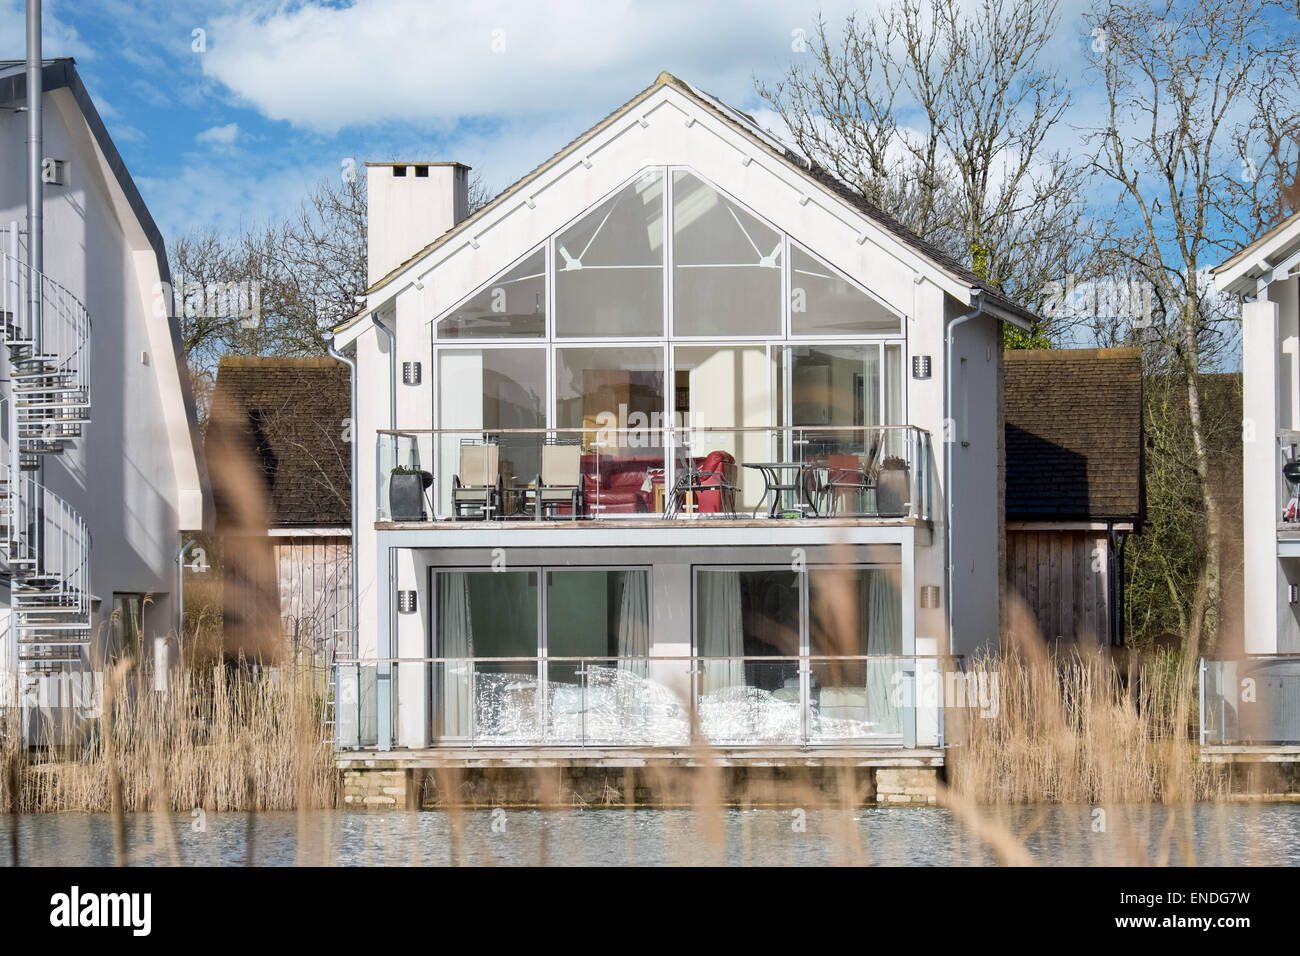 Un bâtiment moderne de lakeside holiday home à Lower Mill dans le Cotswold water park près de Cirencester dans Gloucestershire, Royaume-Uni Banque D'Images